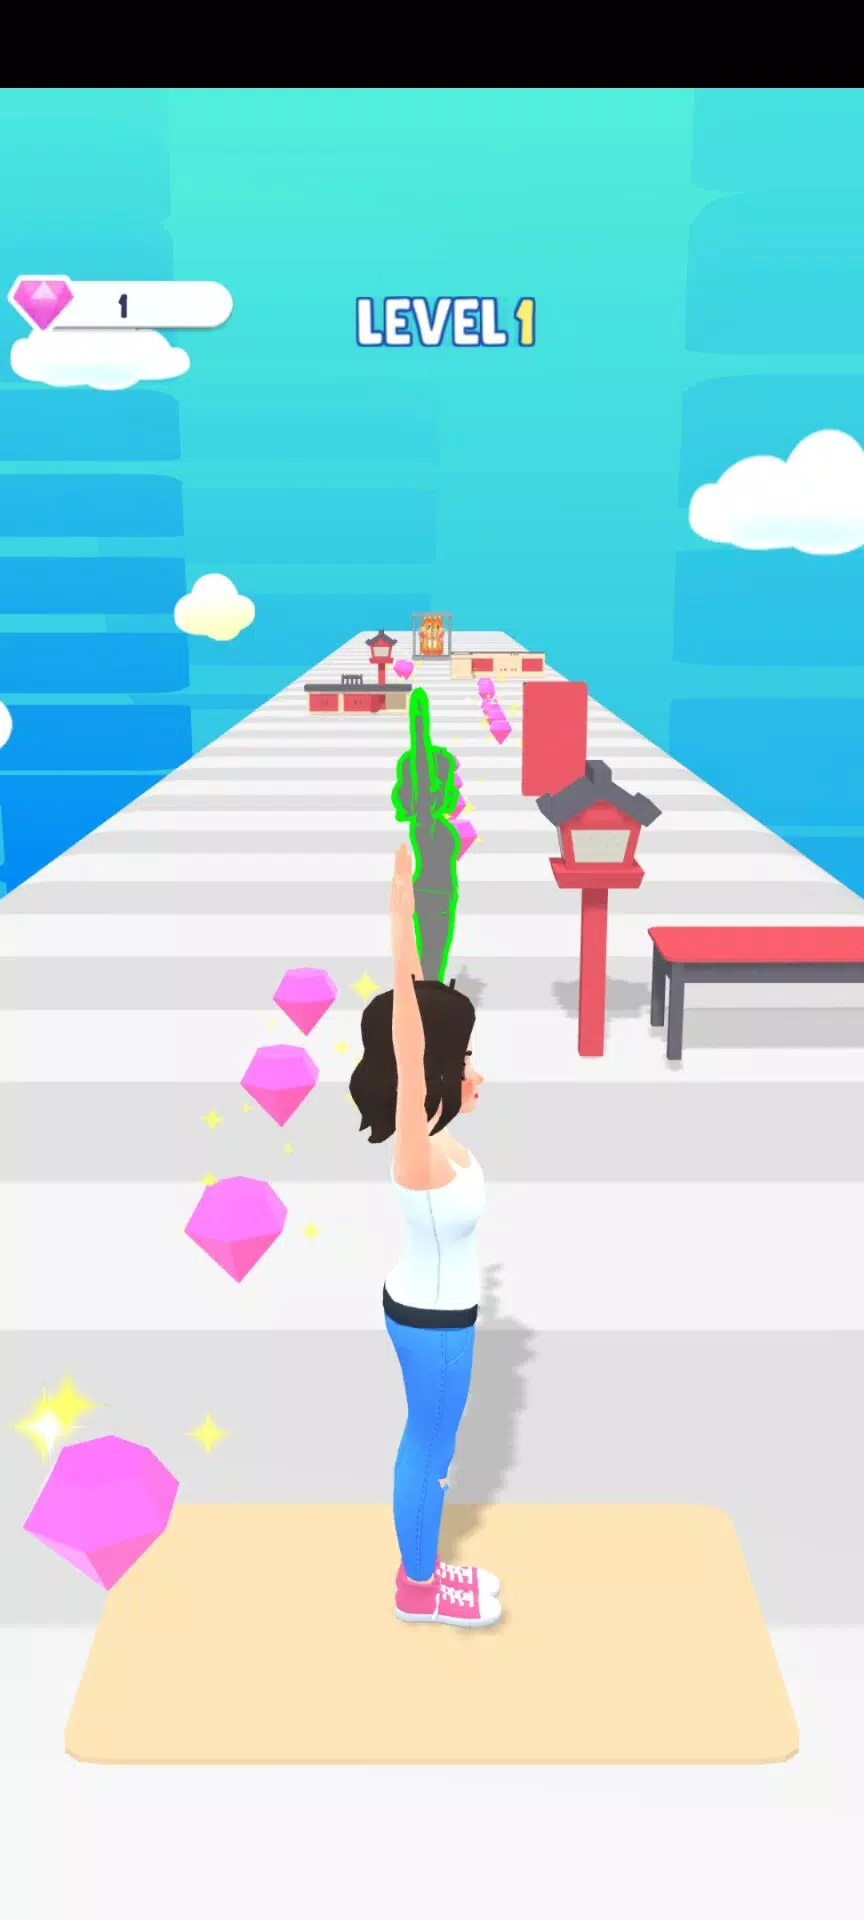 Chào mừng đến với Yoga Run 3D APK - bản cập nhật mới nhất cho điện thoại di động và máy tính bảng của bạn. Với hình ảnh 3D sống động, game mang đến một trải nghiệm Yoga mới mẻ, thú vị và không kém phần hấp dẫn.